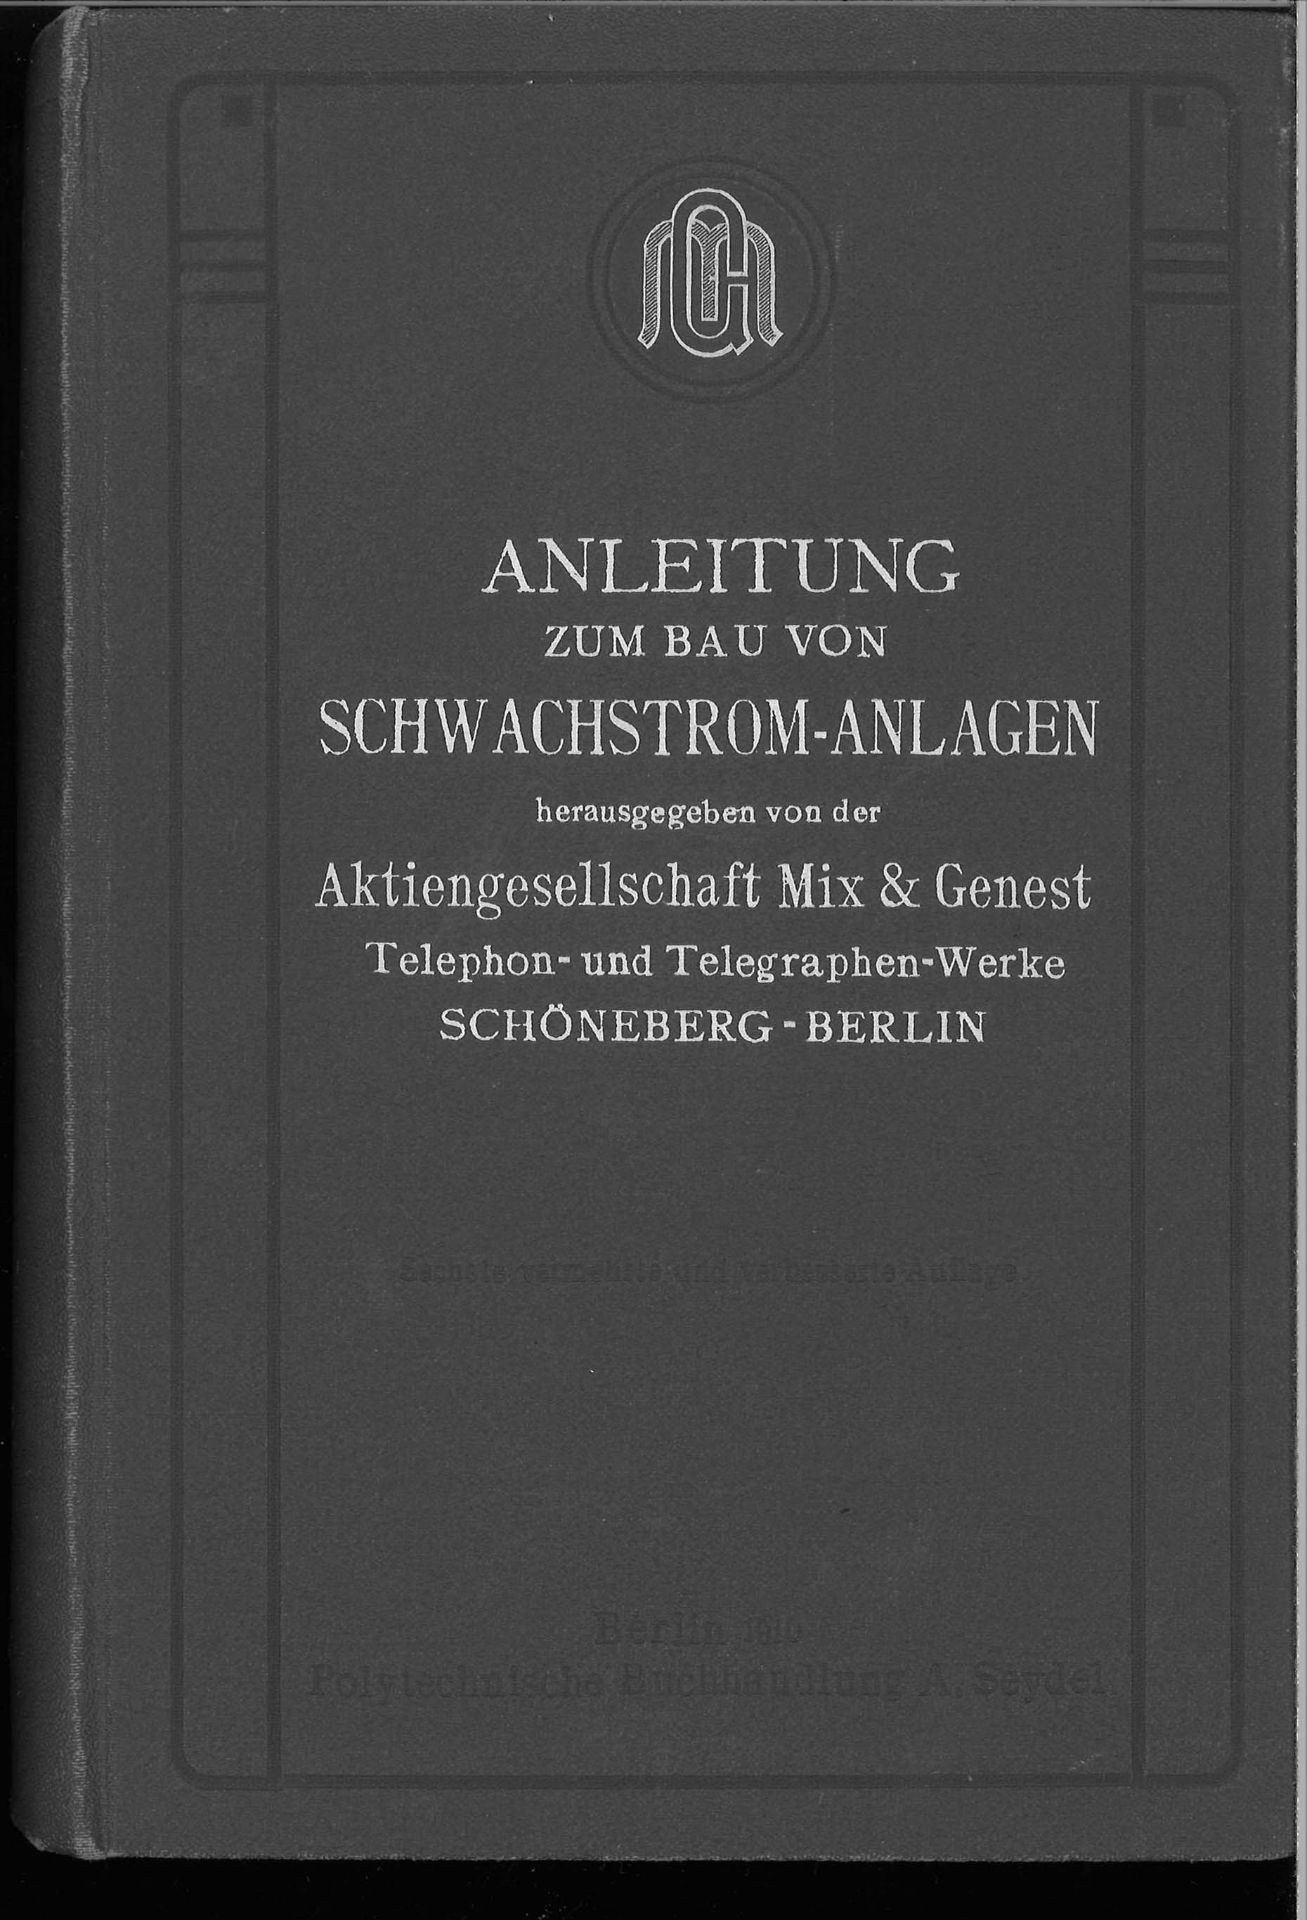 Anleitung zum Bau von Schwachstrom-Anlagen, AG mix & Genest, 1910